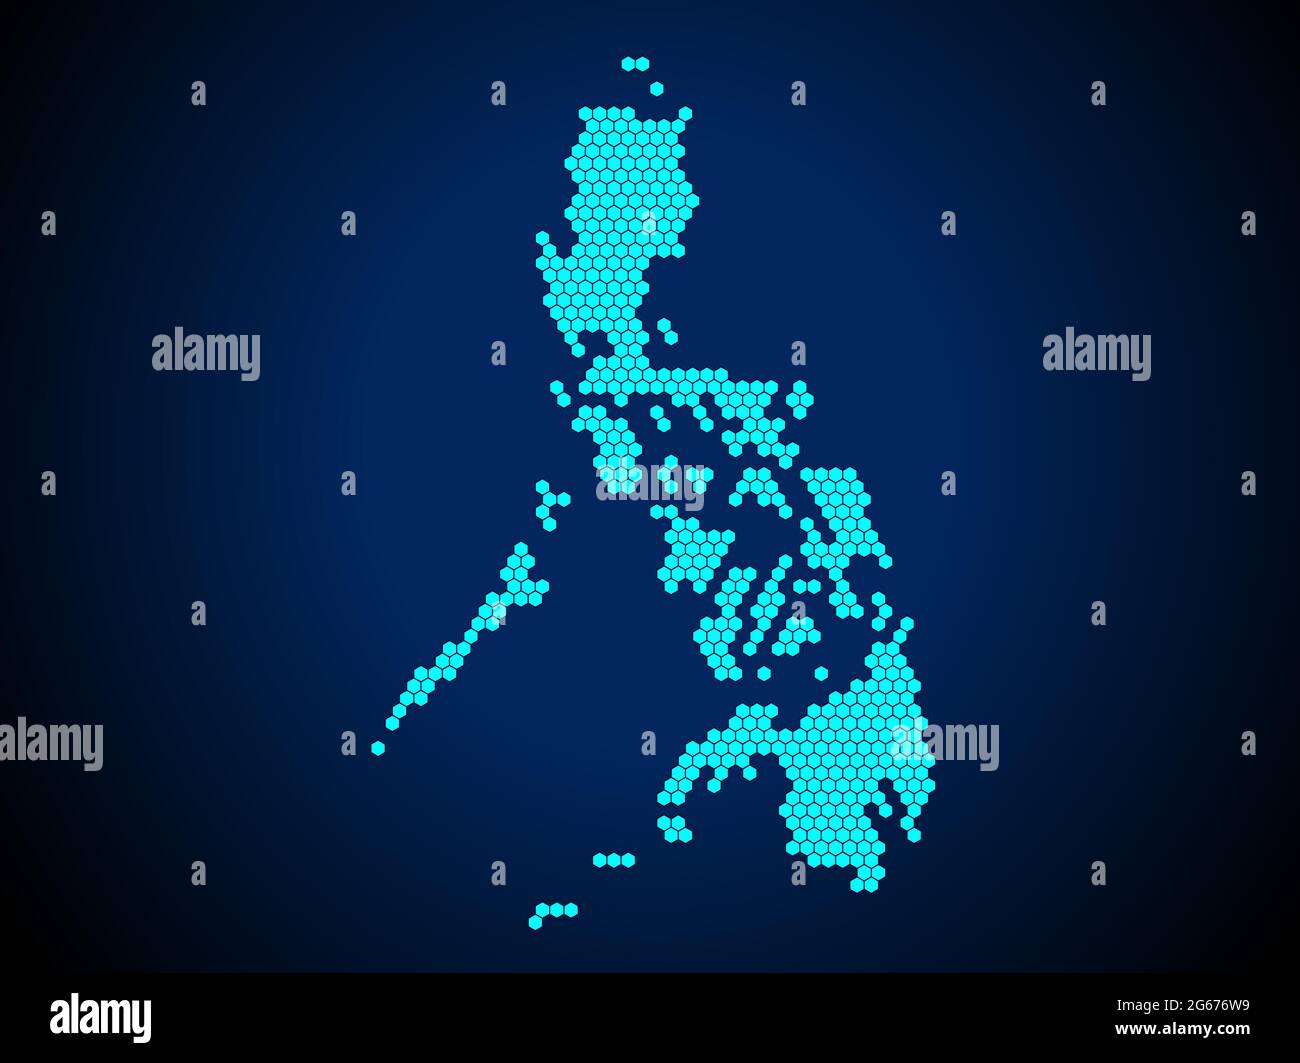 Honigkamm oder Hexagon strukturierte Karte von Philippinen Land isoliert auf dunkelblauem Hintergrund - Vektor-Illustration Stock Vektor